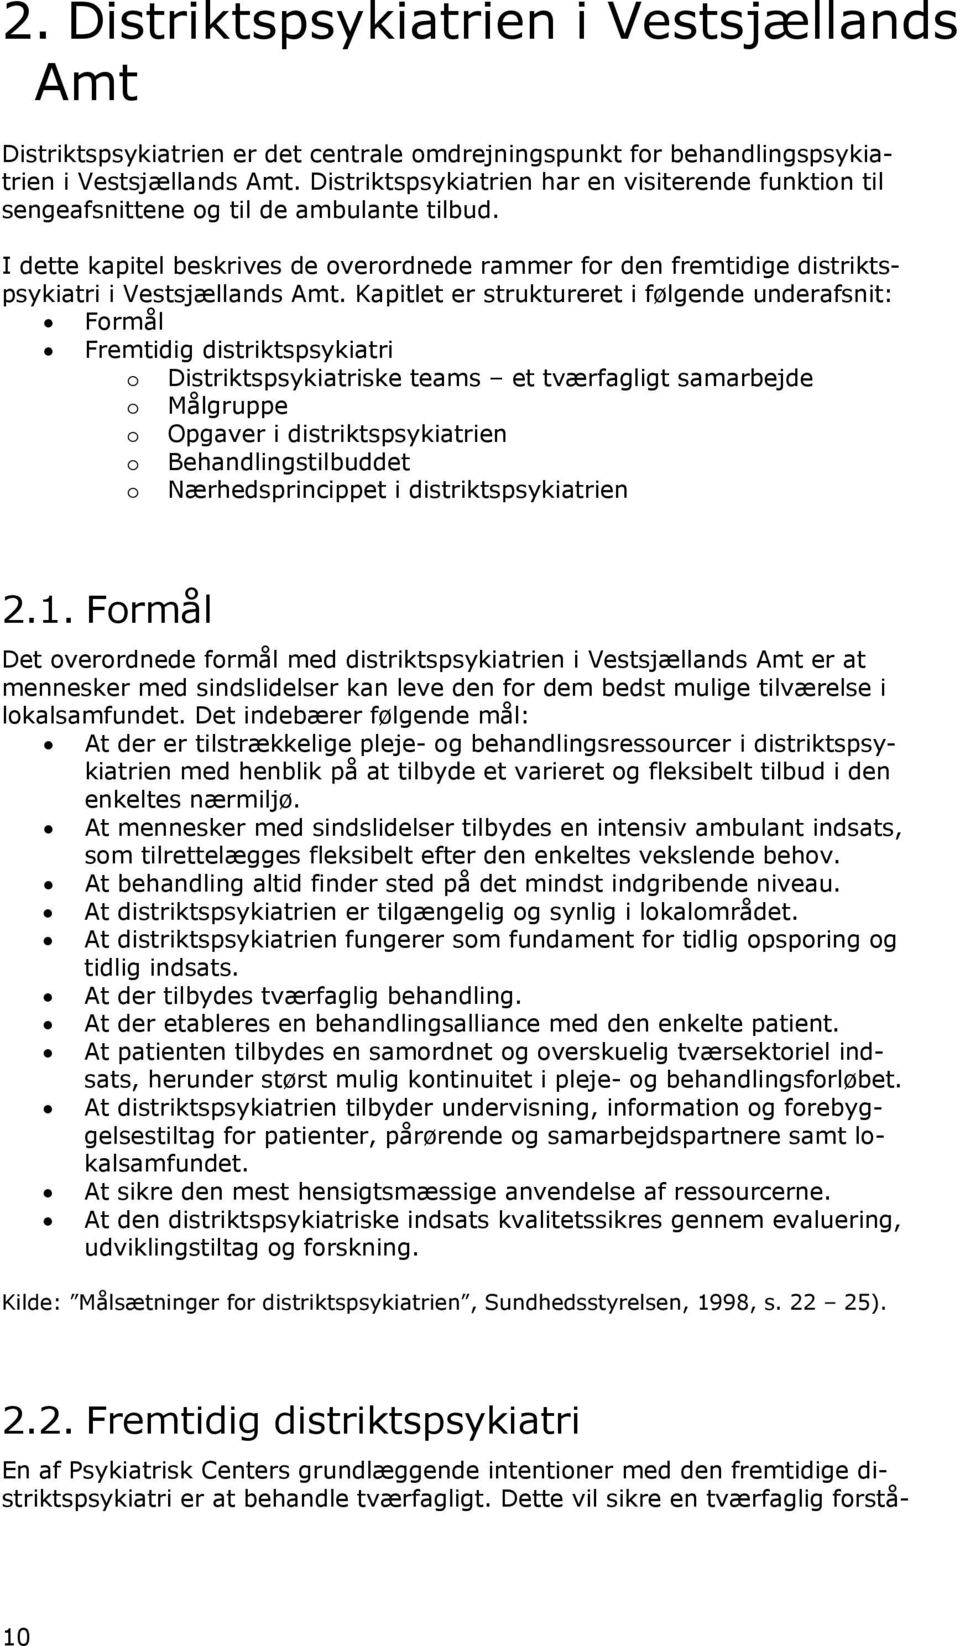 I dette kapitel beskrives de overordnede rammer for den fremtidige distriktspsykiatri i Vestsjællands Amt.